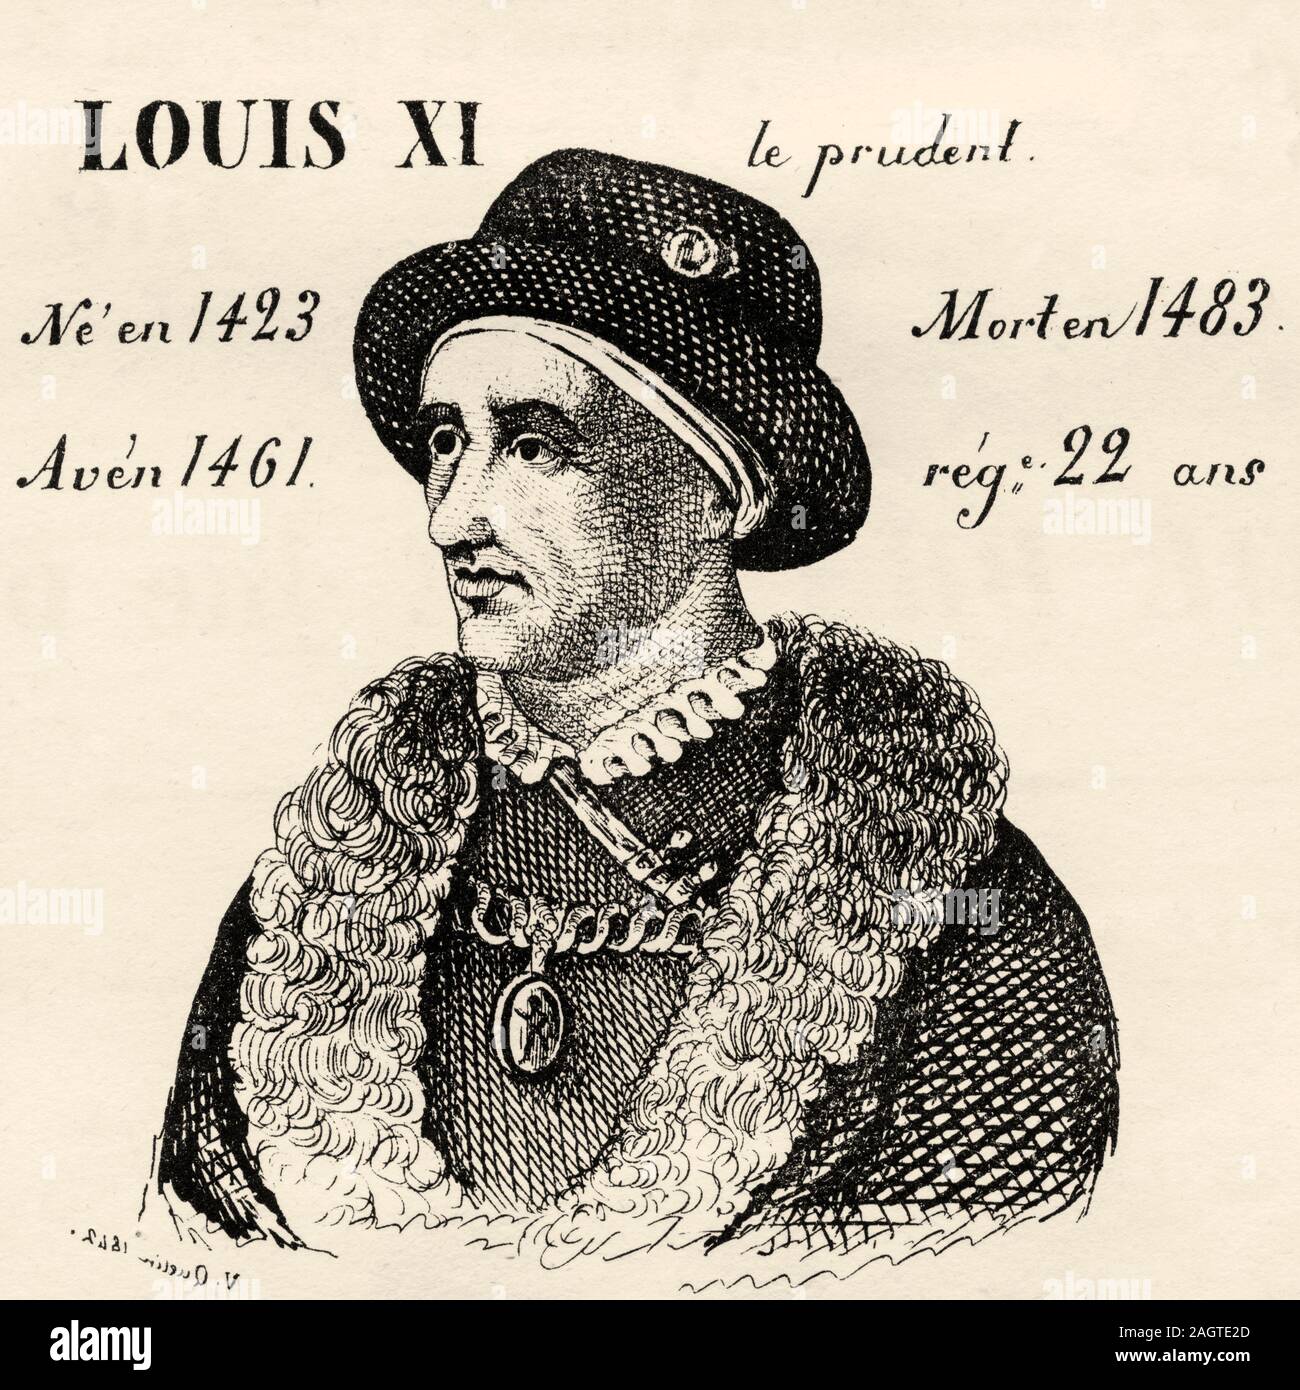 How to pronounce Louis XI